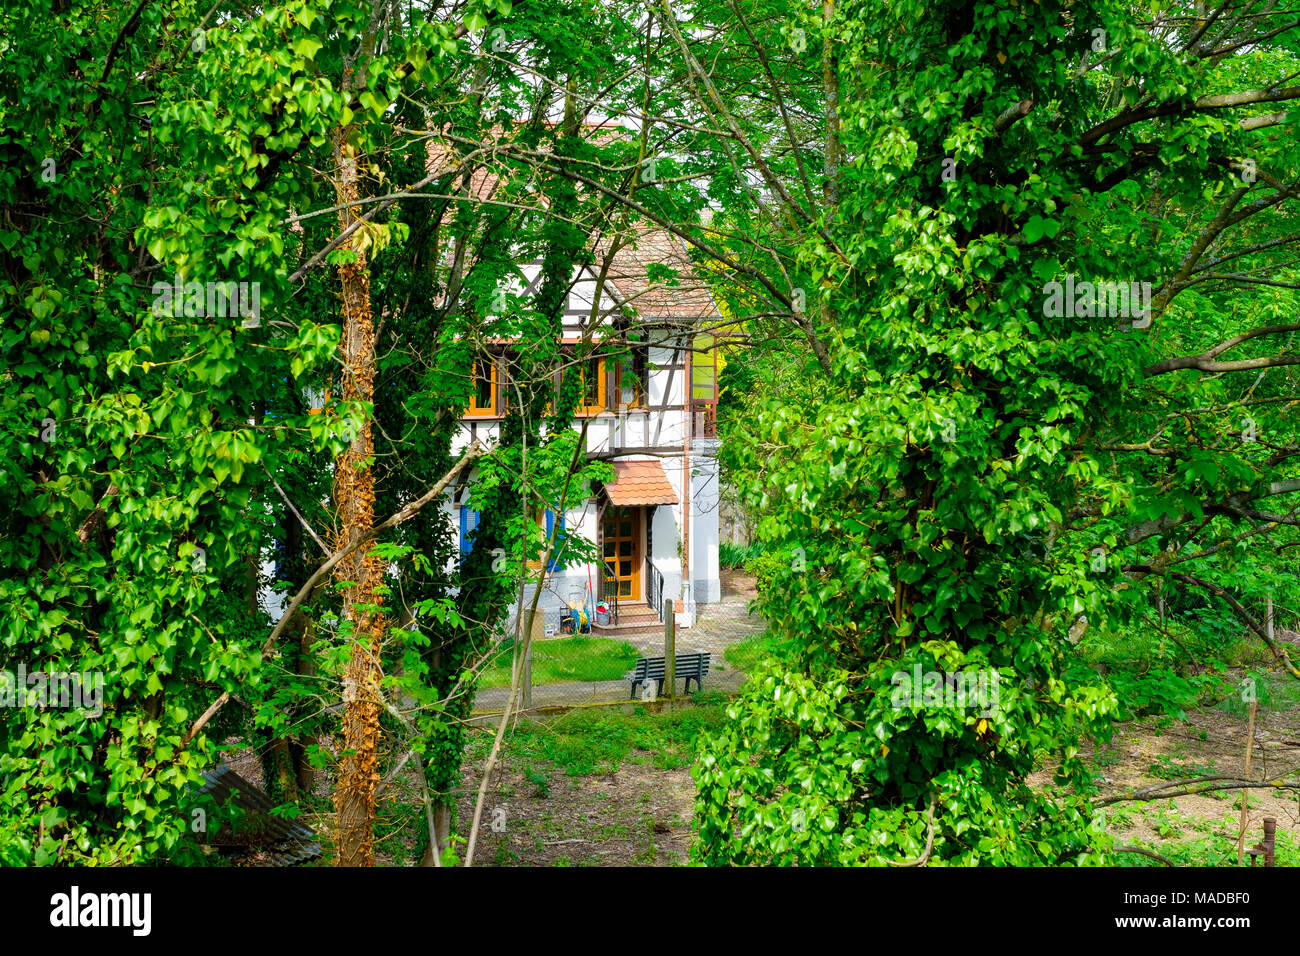 Casa pareada con entramados de madera, Barrio Bosque verde de los árboles, en verano, de Estrasburgo, Alsacia, Francia, Europa, Foto de stock